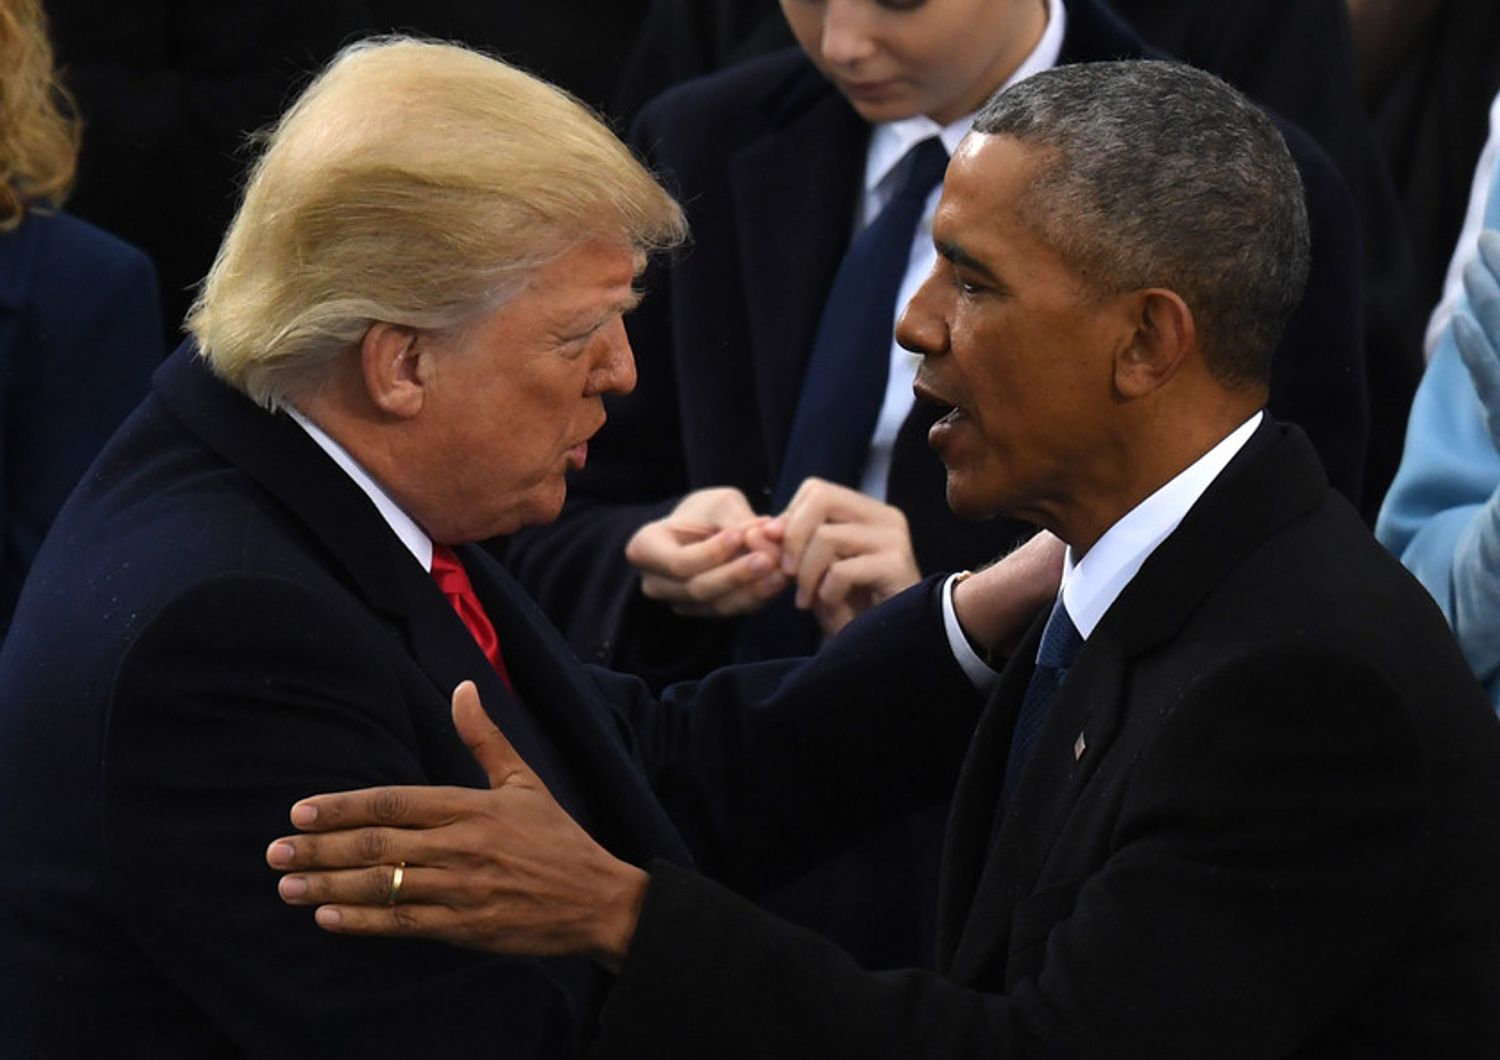 &nbsp;Obama si congratula con il neo presidente Donald Trump (Foto Afp)